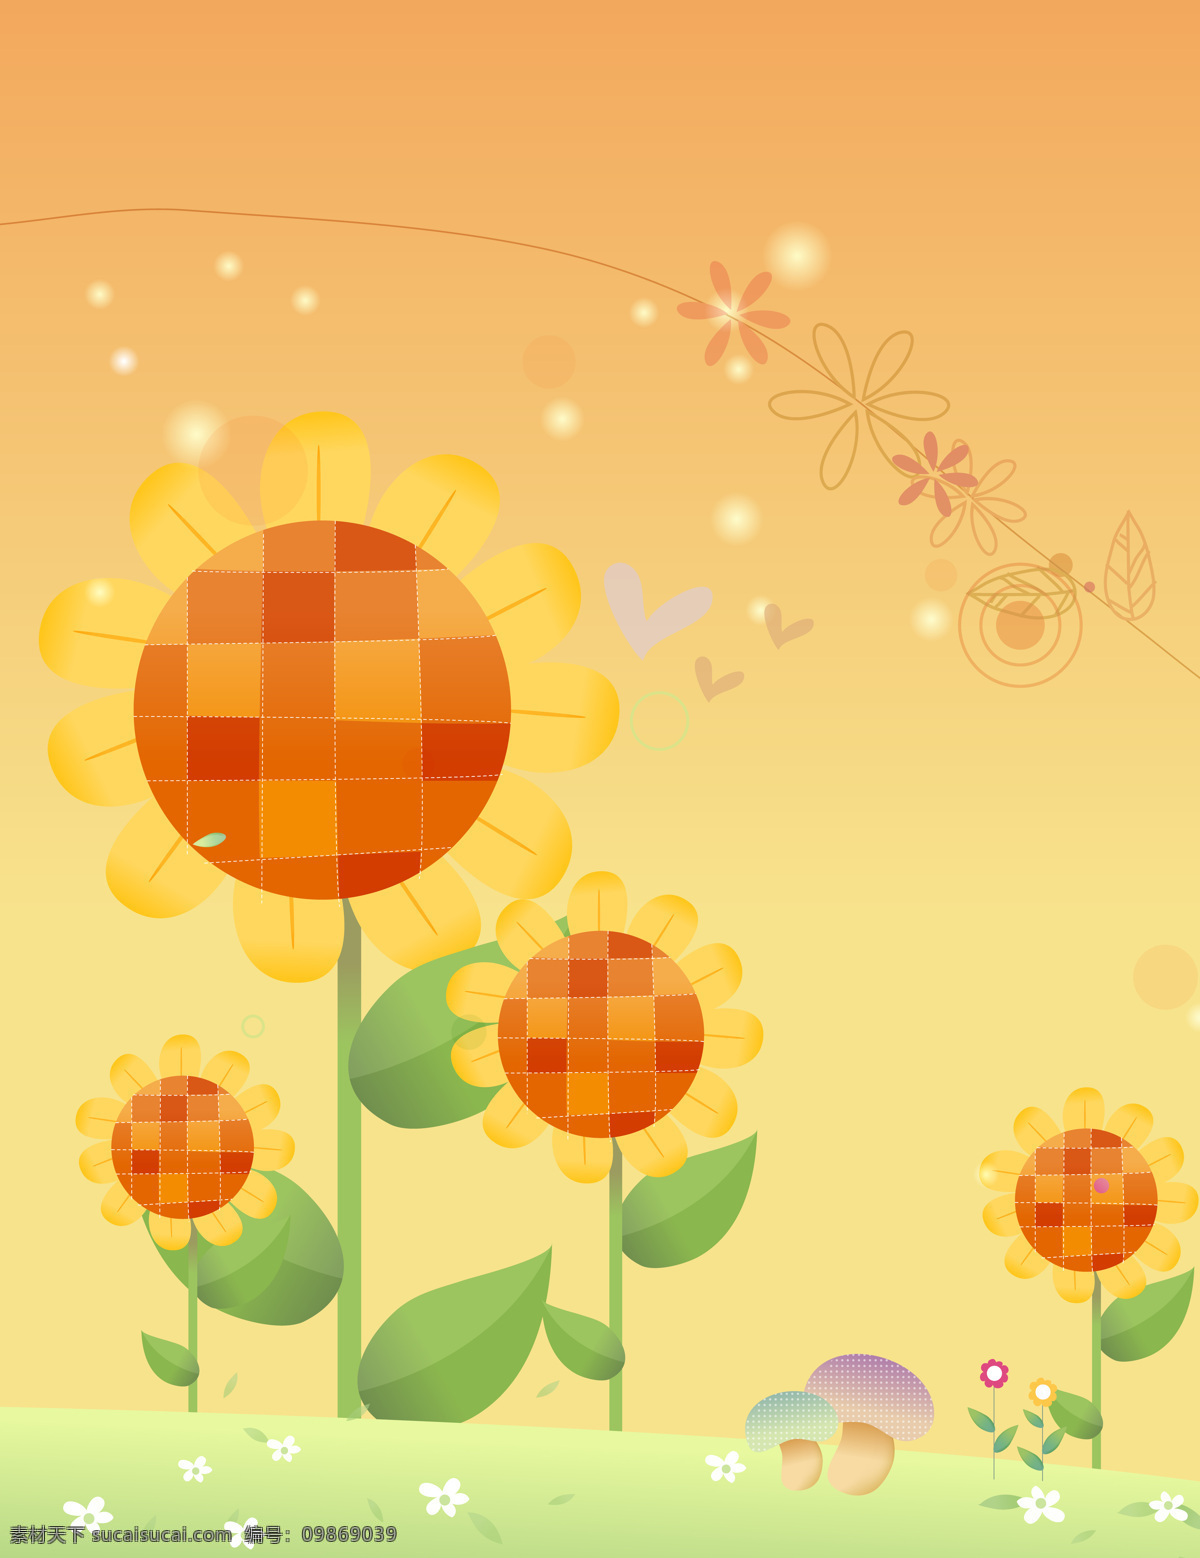 花朵移门 花朵 太阳花 星星 阳光 卡通 蘑菇 菊花 小花 草地 移门 设计图库 底纹边框 移门图案